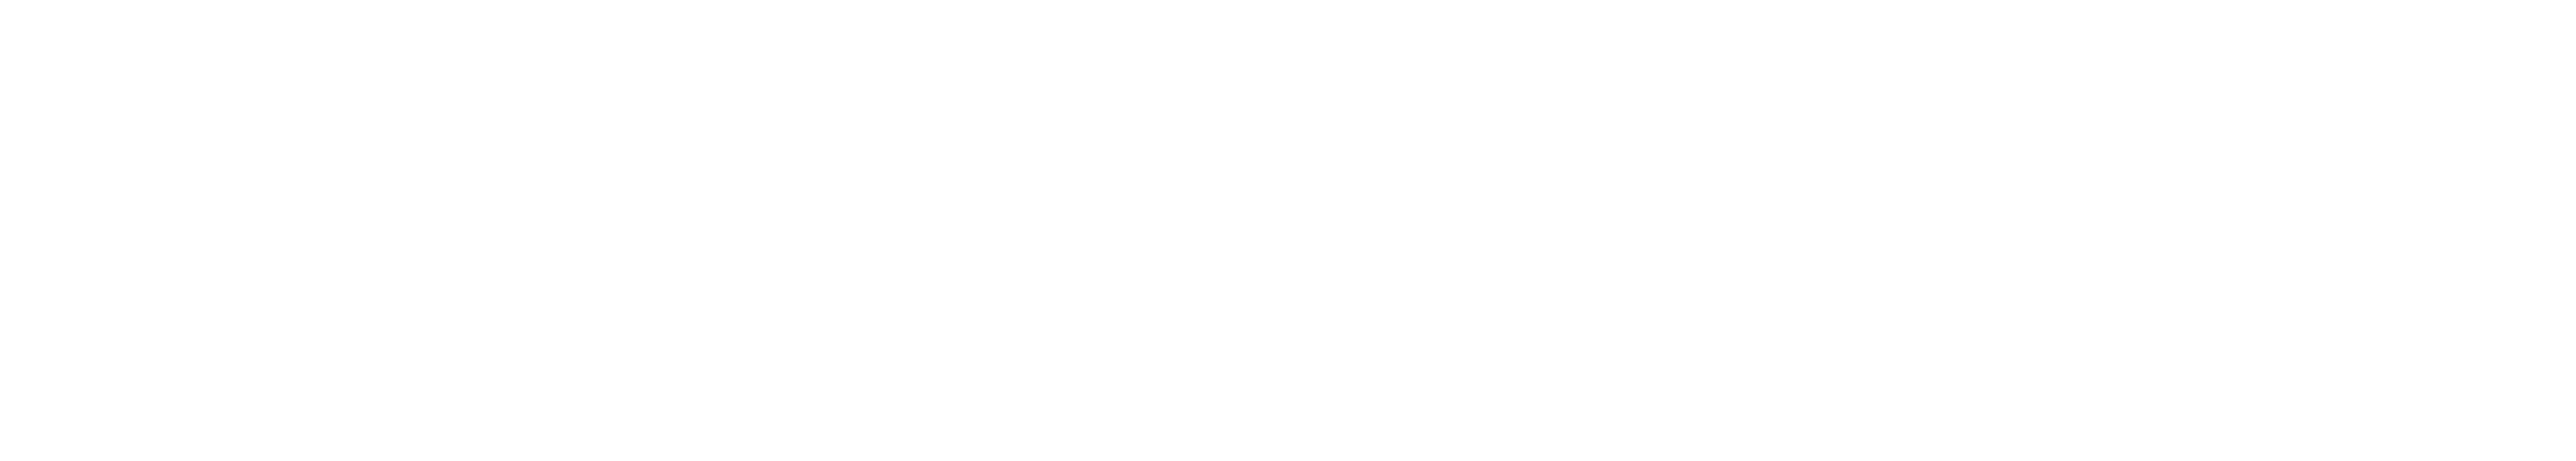 CopaData_Logo_white